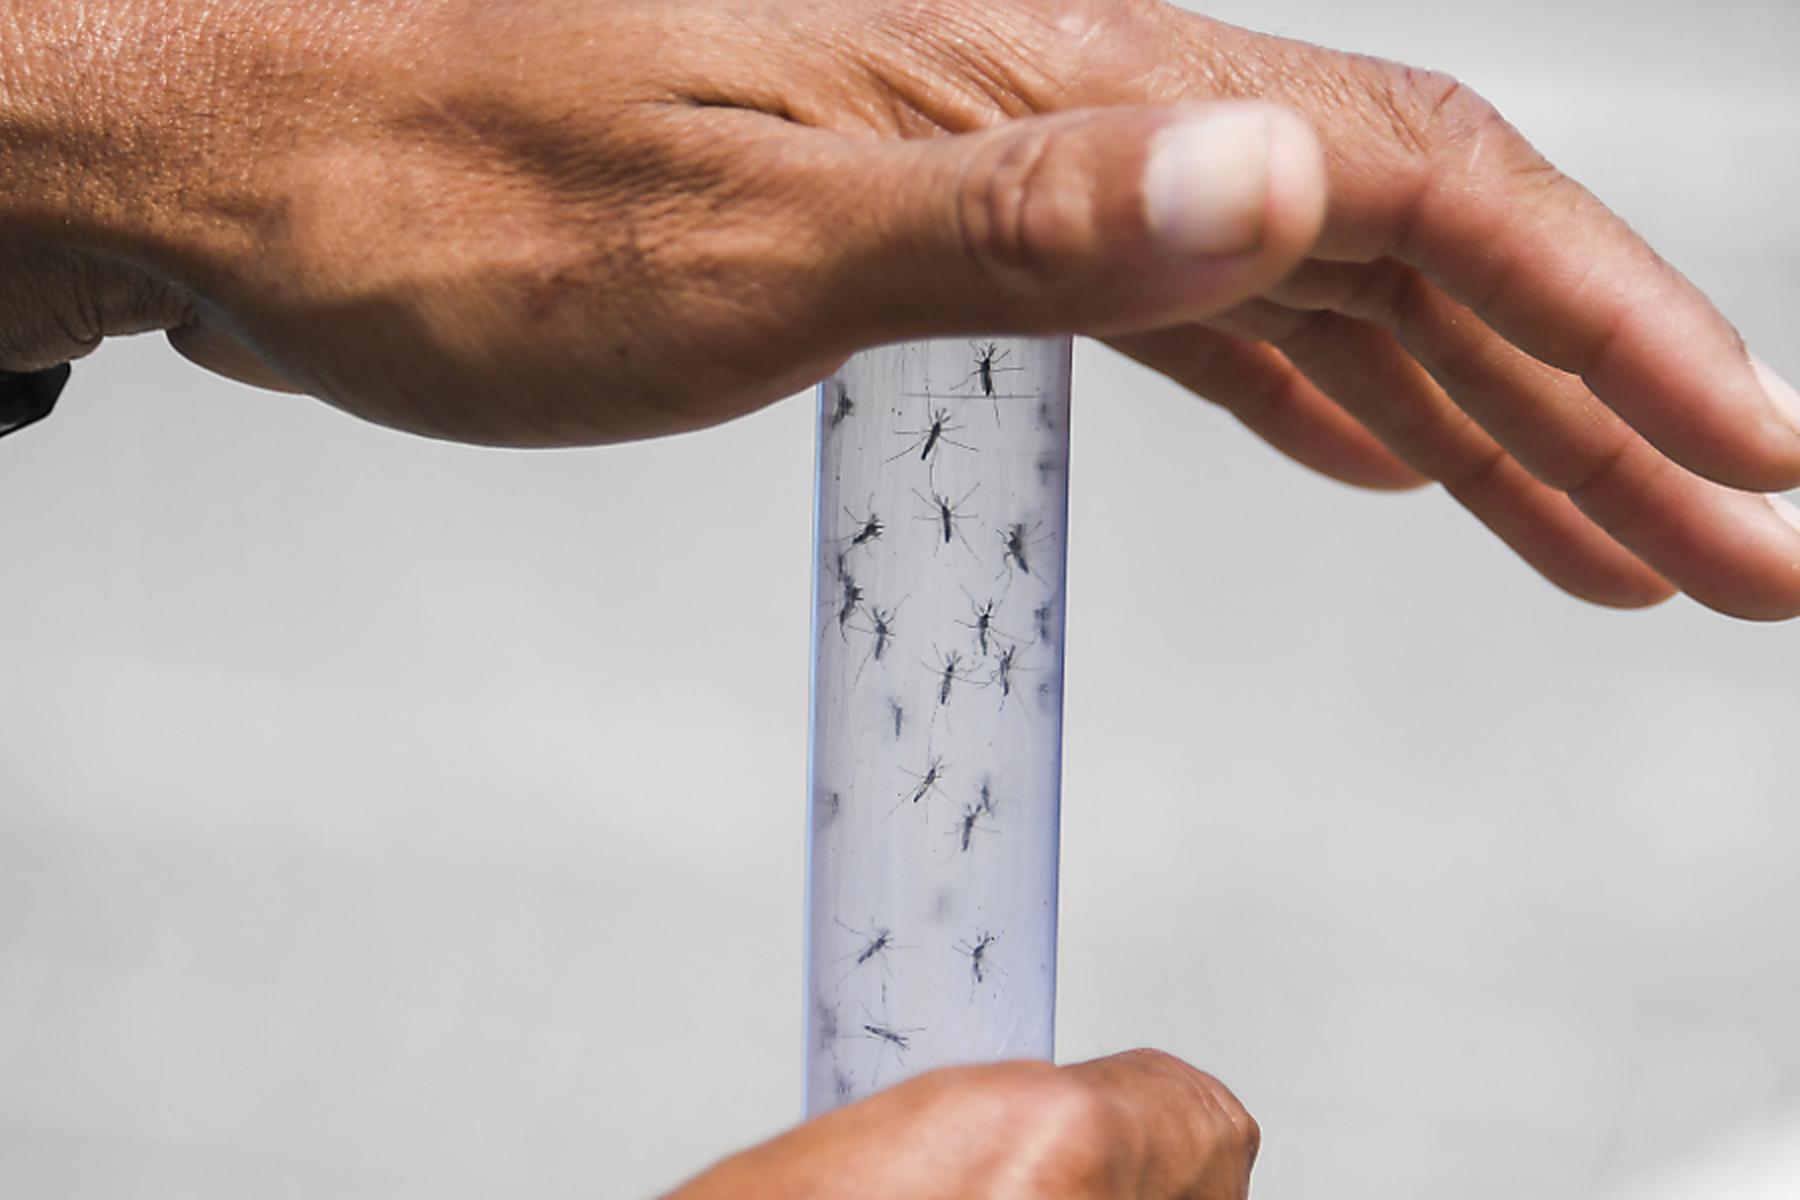 Tropenkrankheit: Rekord-Dengue-Saison in Lateinamerika und der Karibik droht